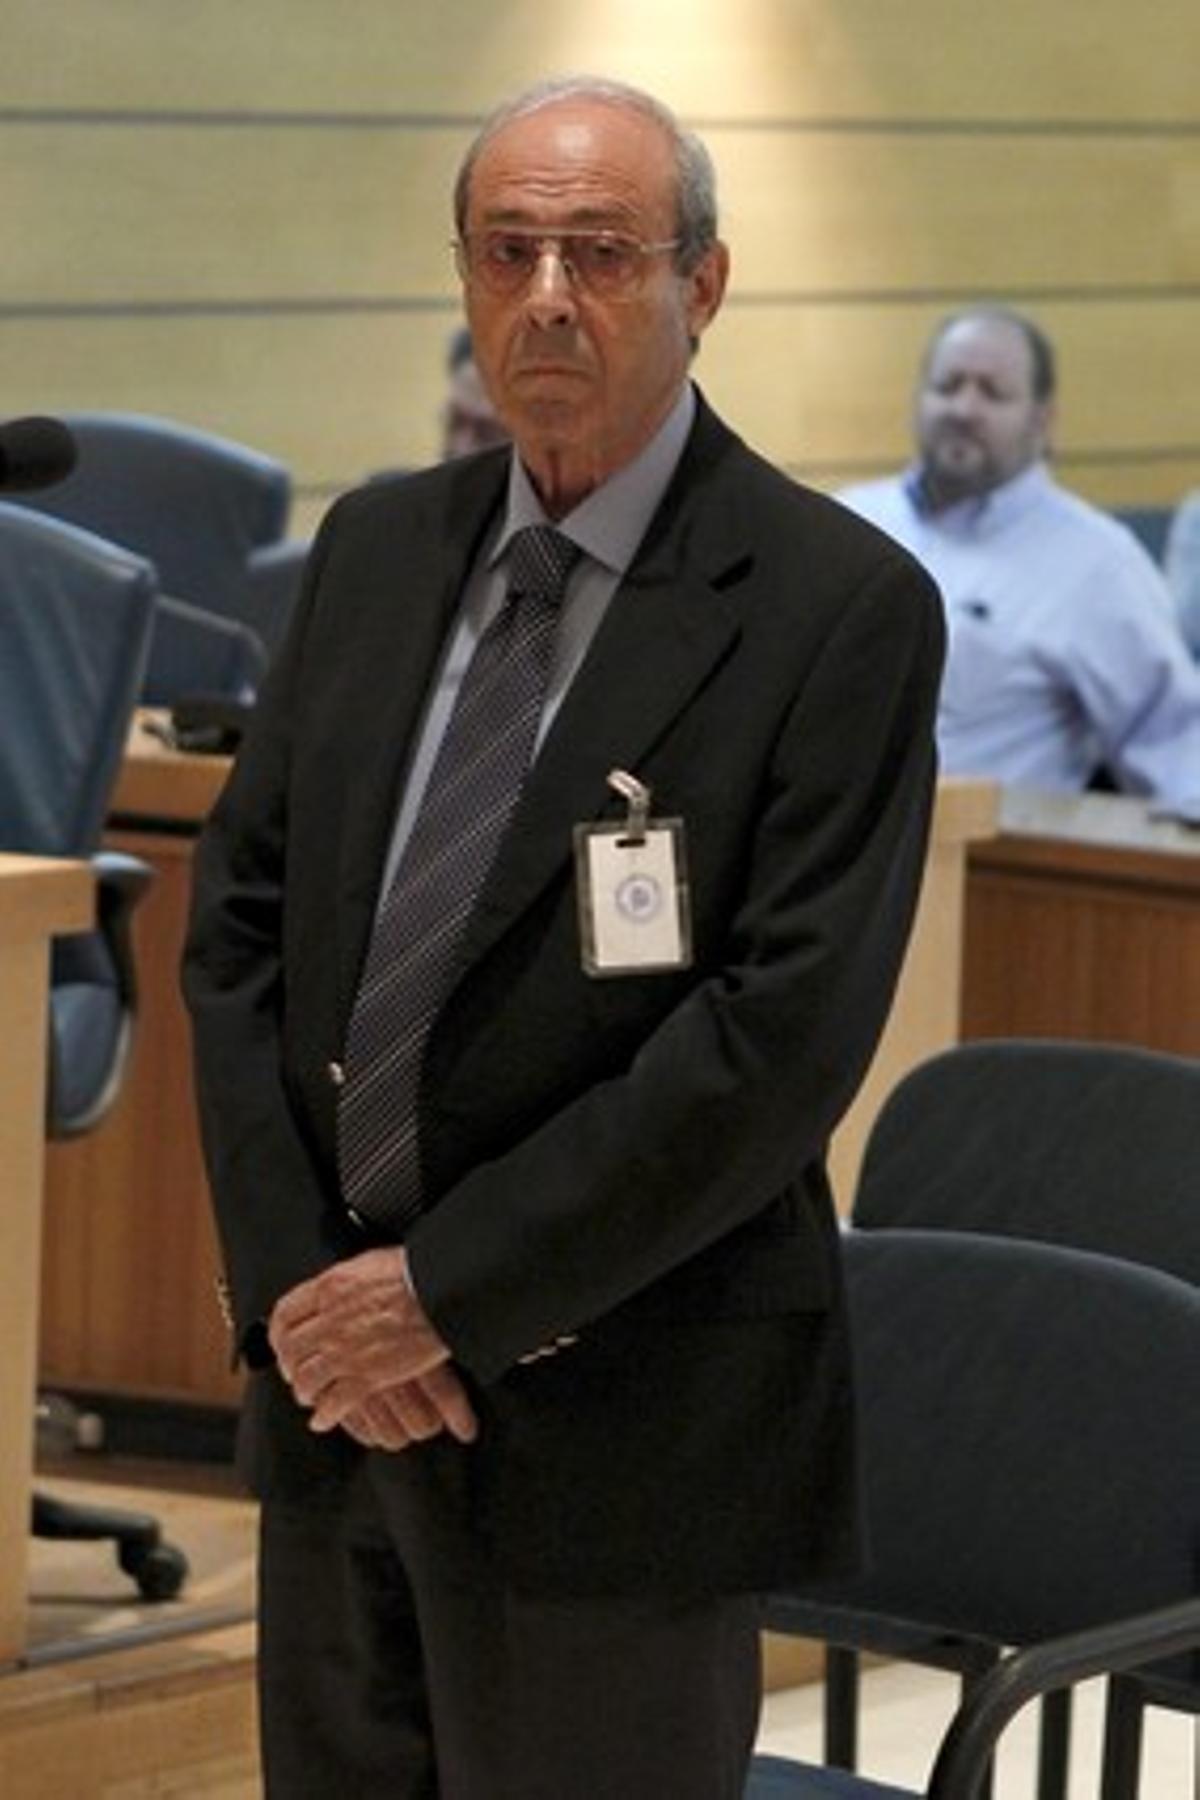 Miguel Ángel Planchuelo, durant el judici que se segueix contra ell a l’Audiència Nacional.